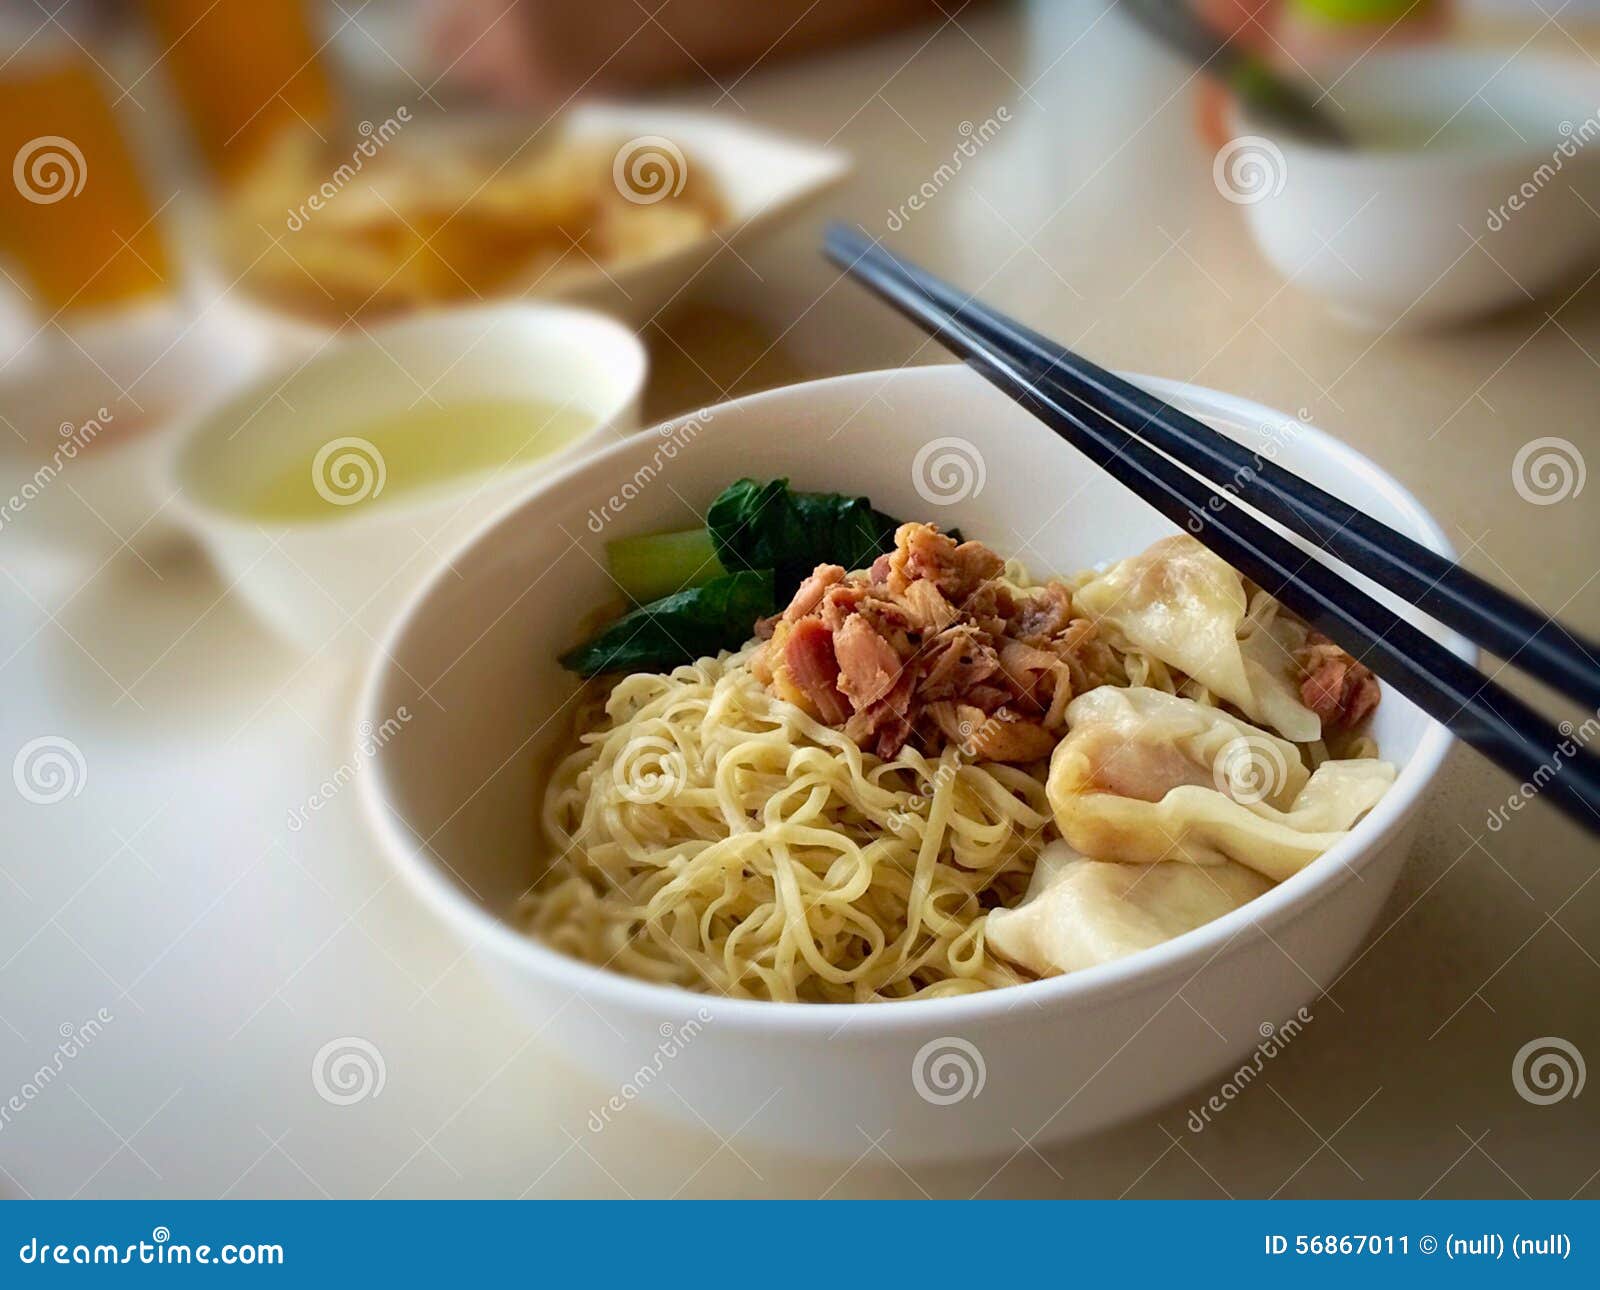 Asian comfort food